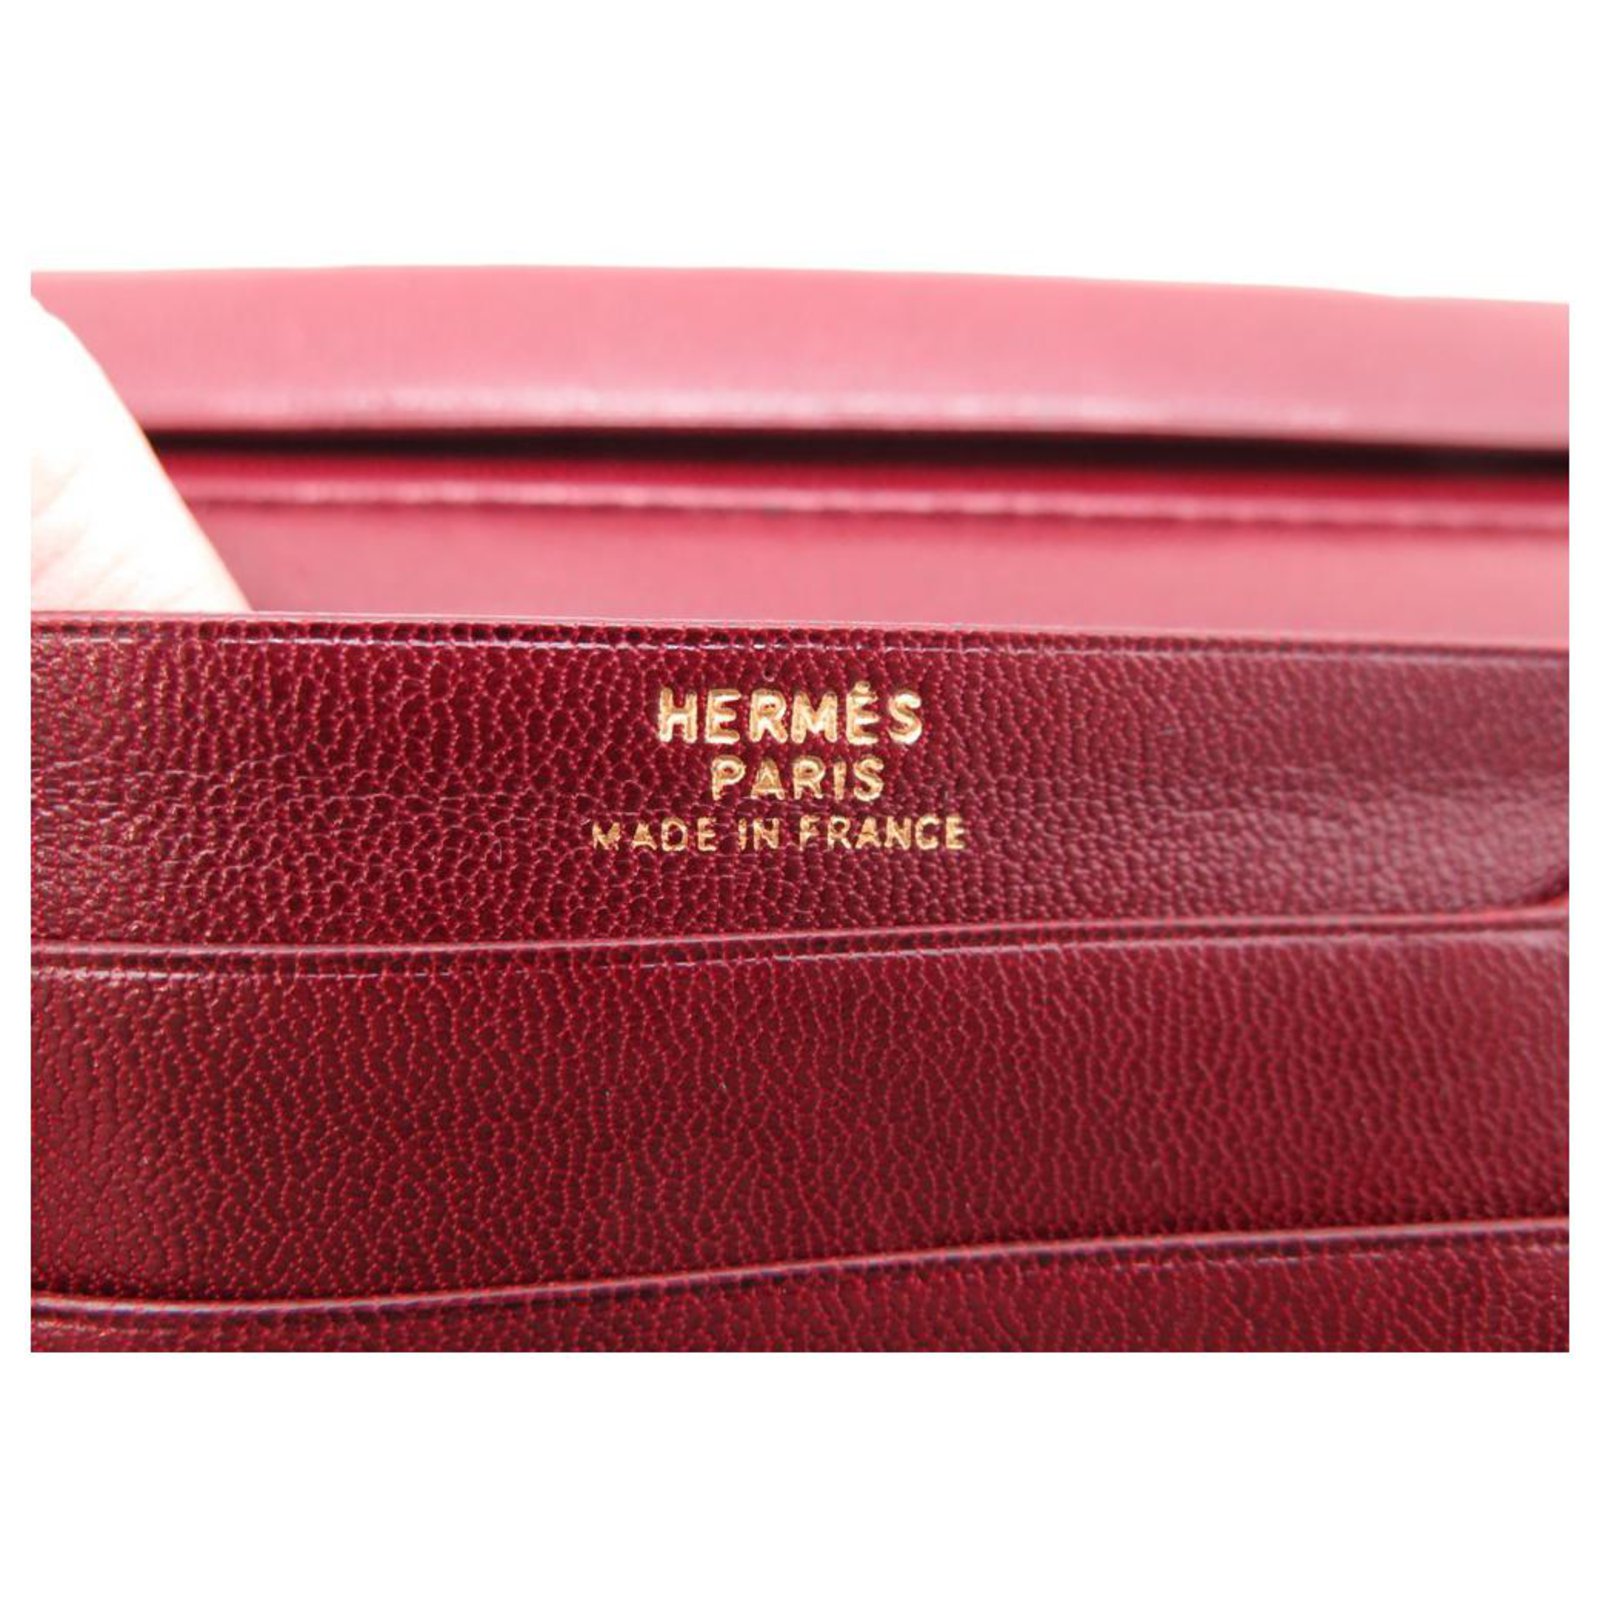 Hermès VINTAGE HERMES WALLET IN BURGUNDY RED LEATHER WALLET CARD HOLDER ...